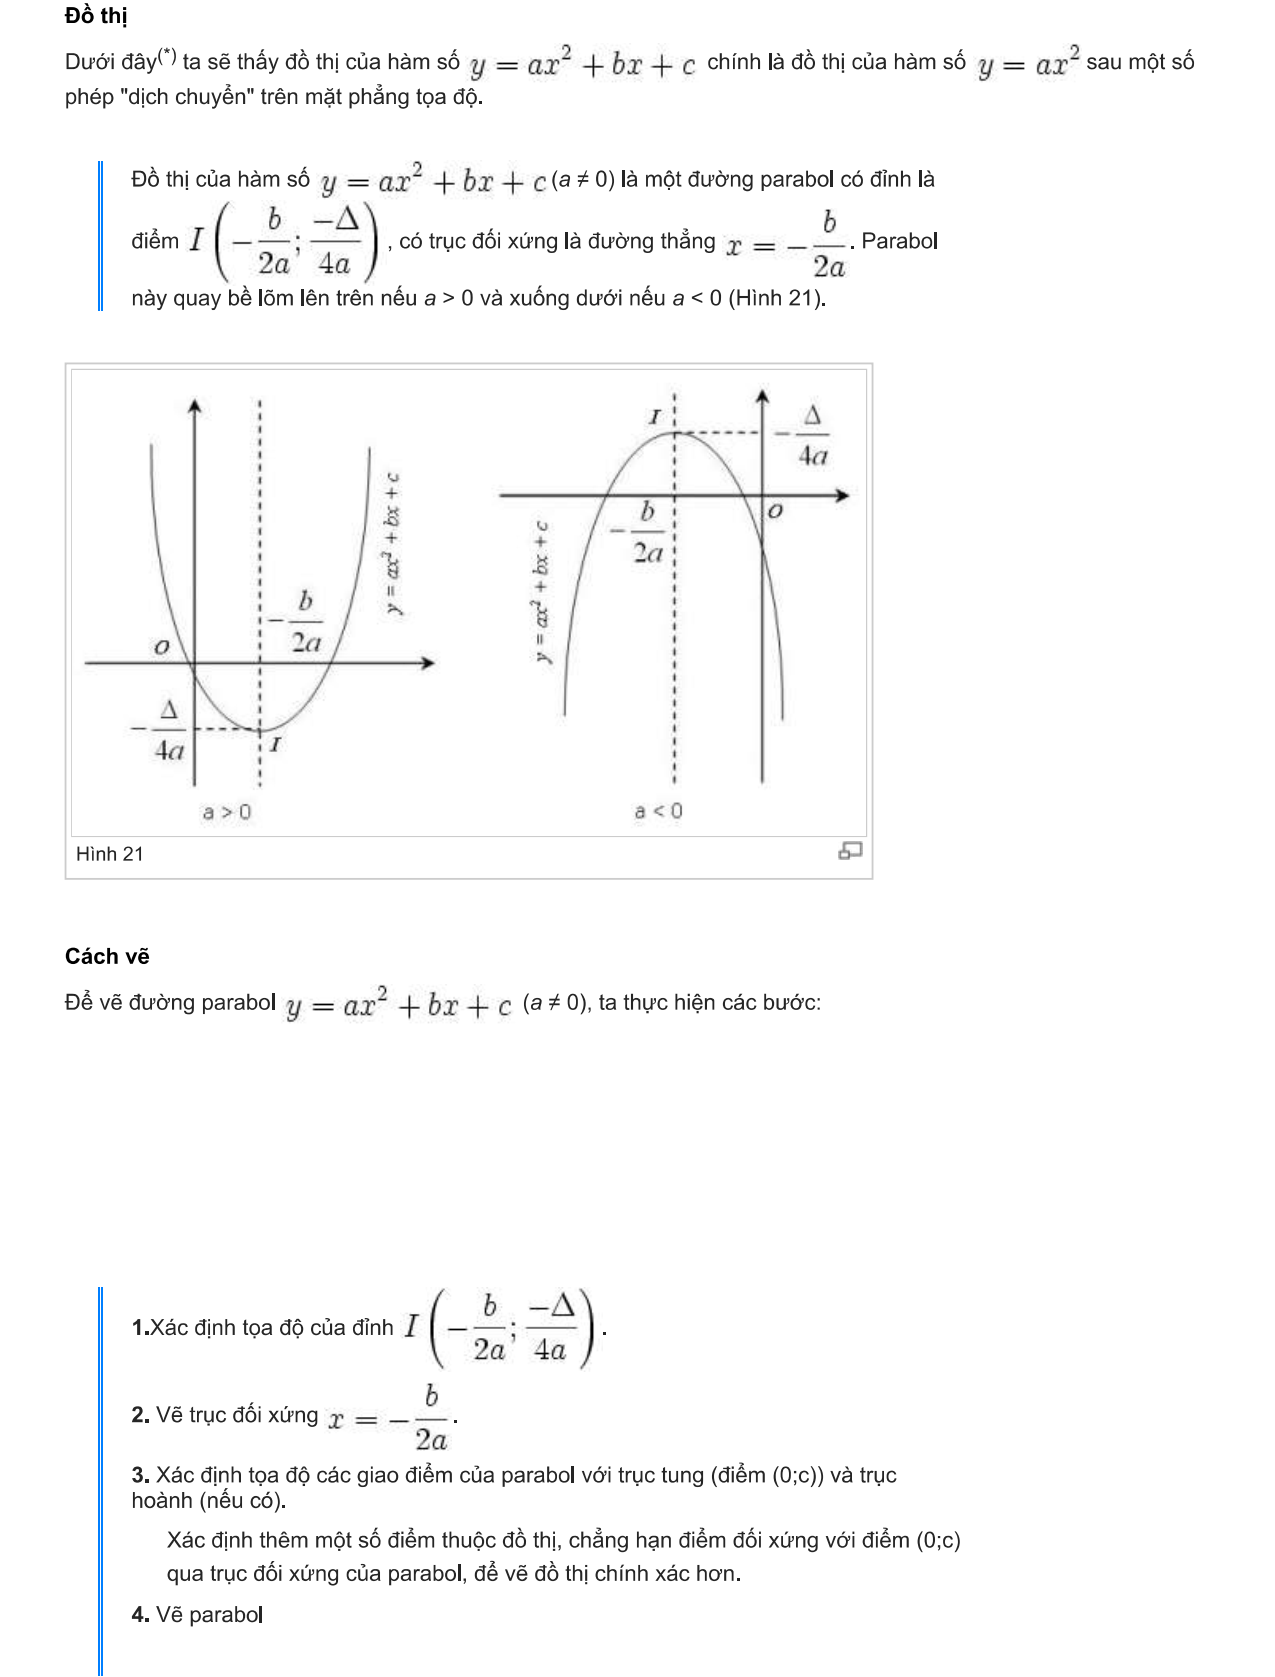 cách vẽ 6 .  hình parabol